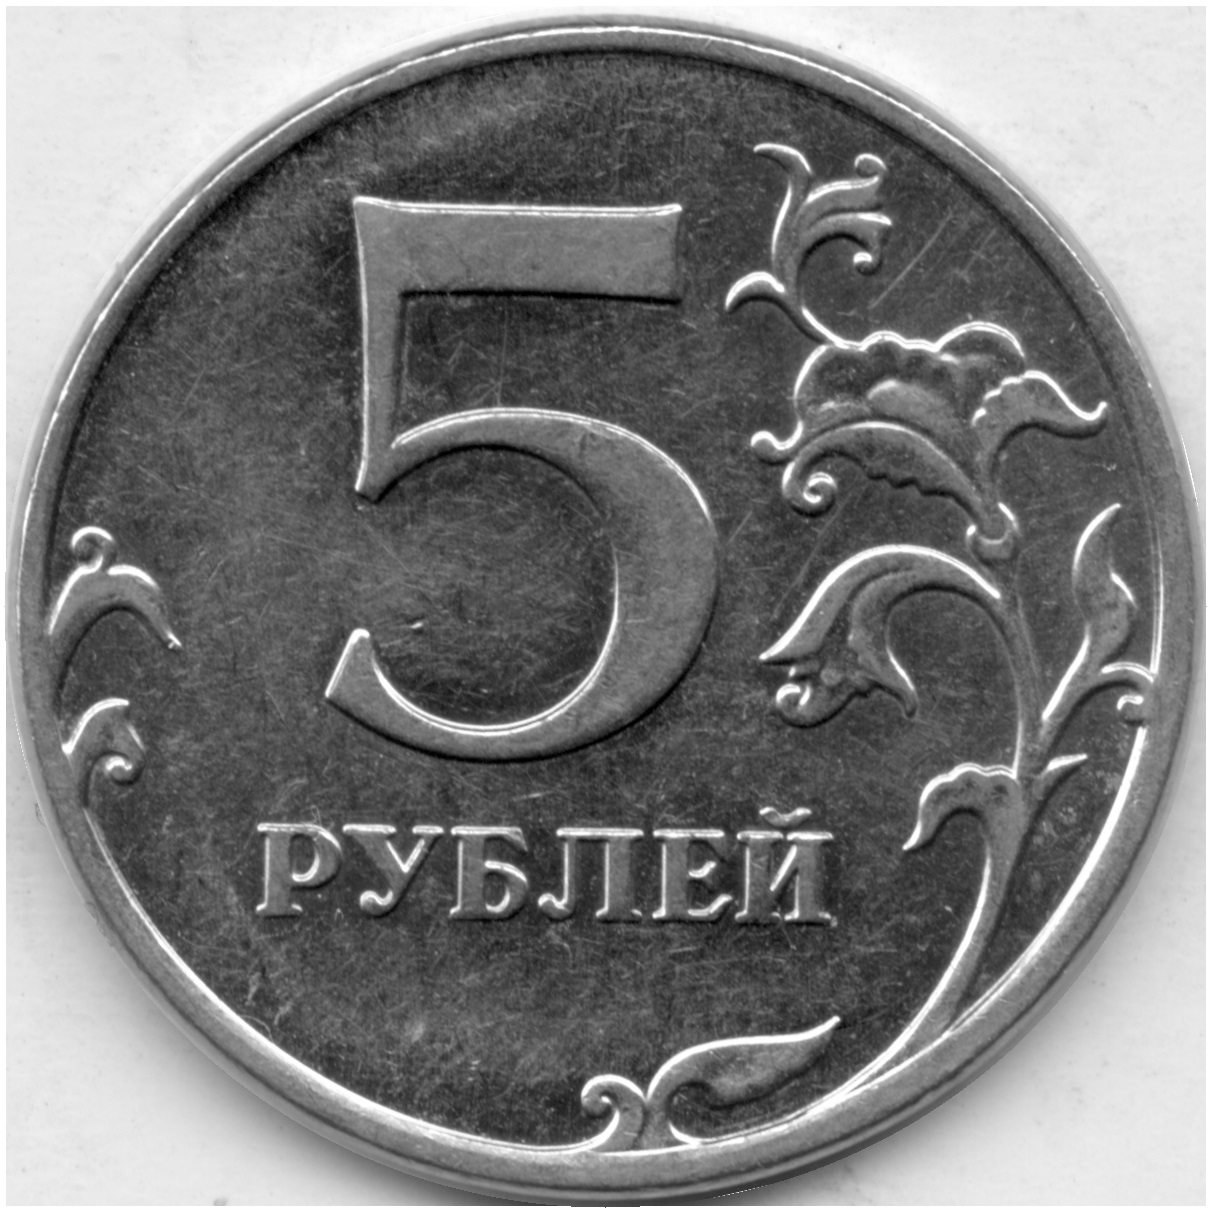 5 рублей повышенной. 5 Рублей 2012 ММД. 5 Рублей. 5 Рублей 2012 года ММД. 5 Рублей бумажные.